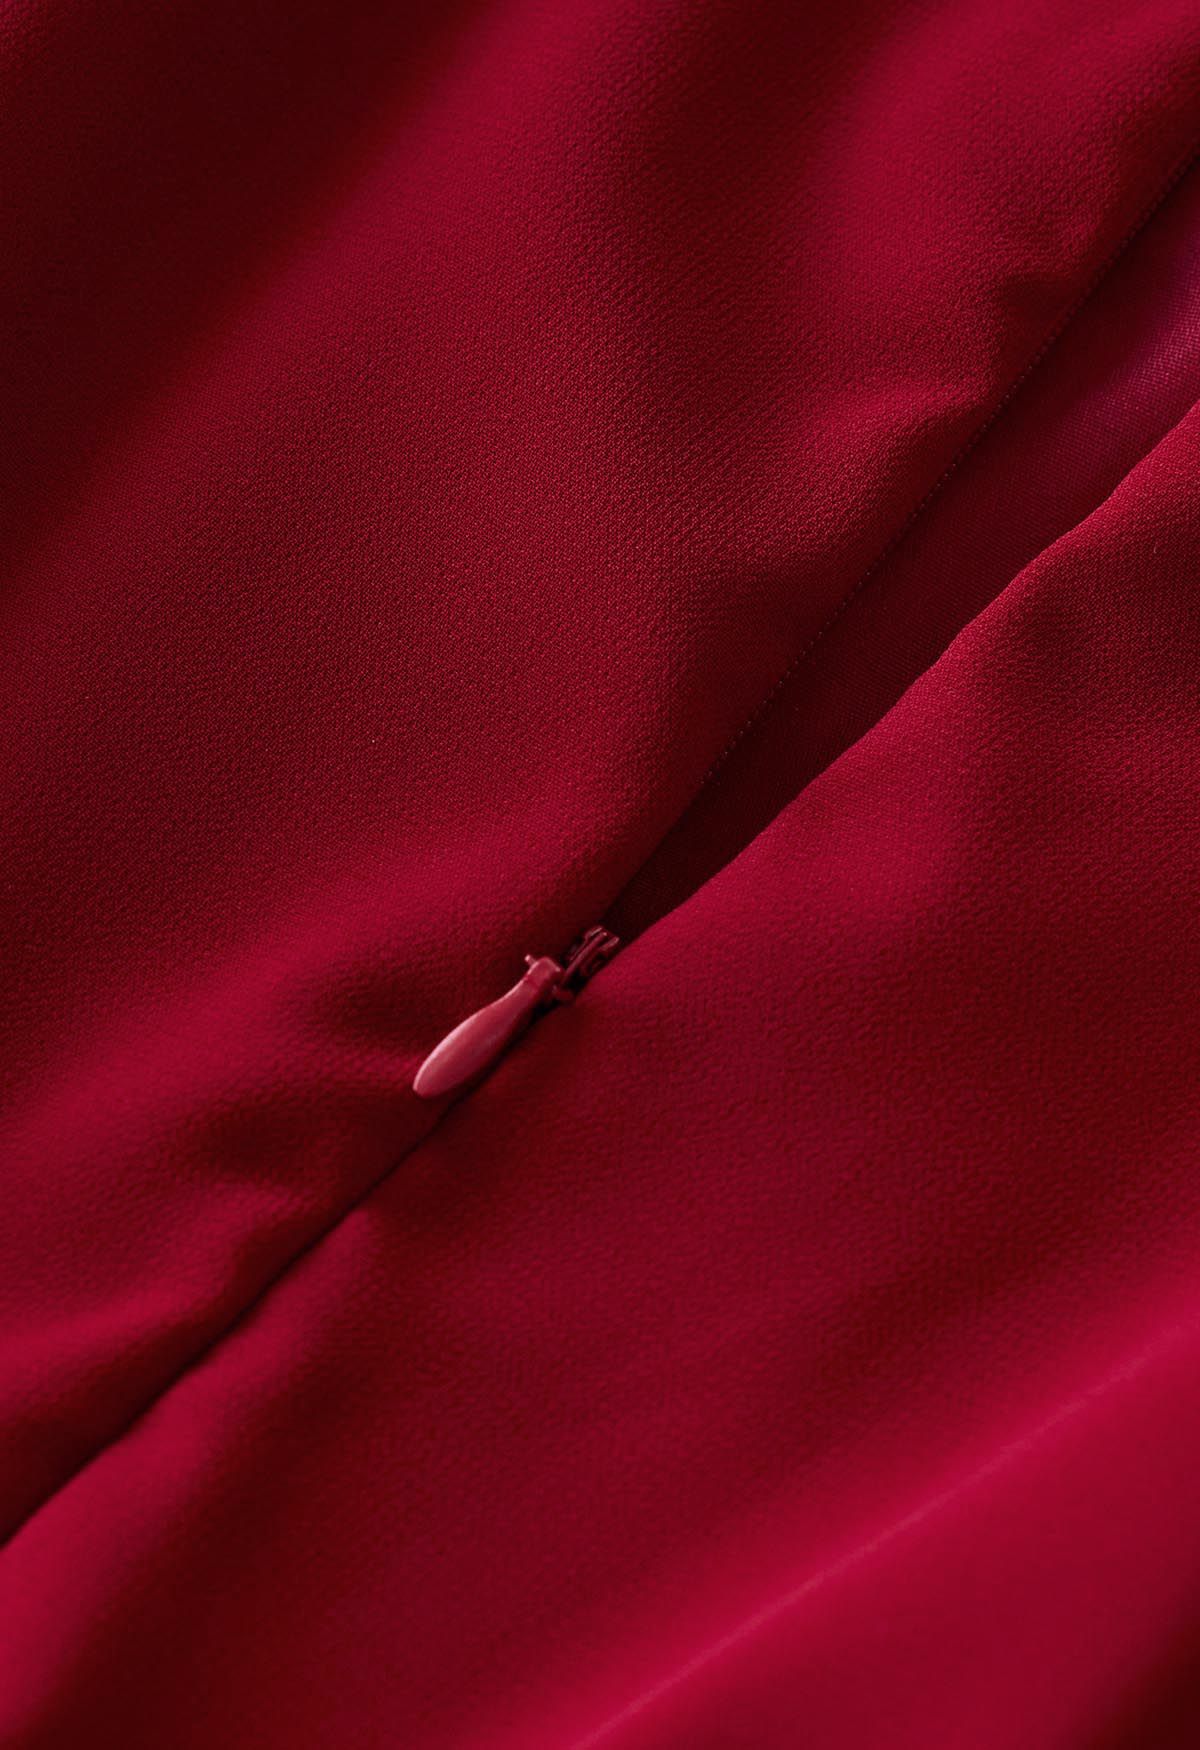 فستان ماكسي شيفون بطيات من الدانتيل الكروشيه باللون الأحمر